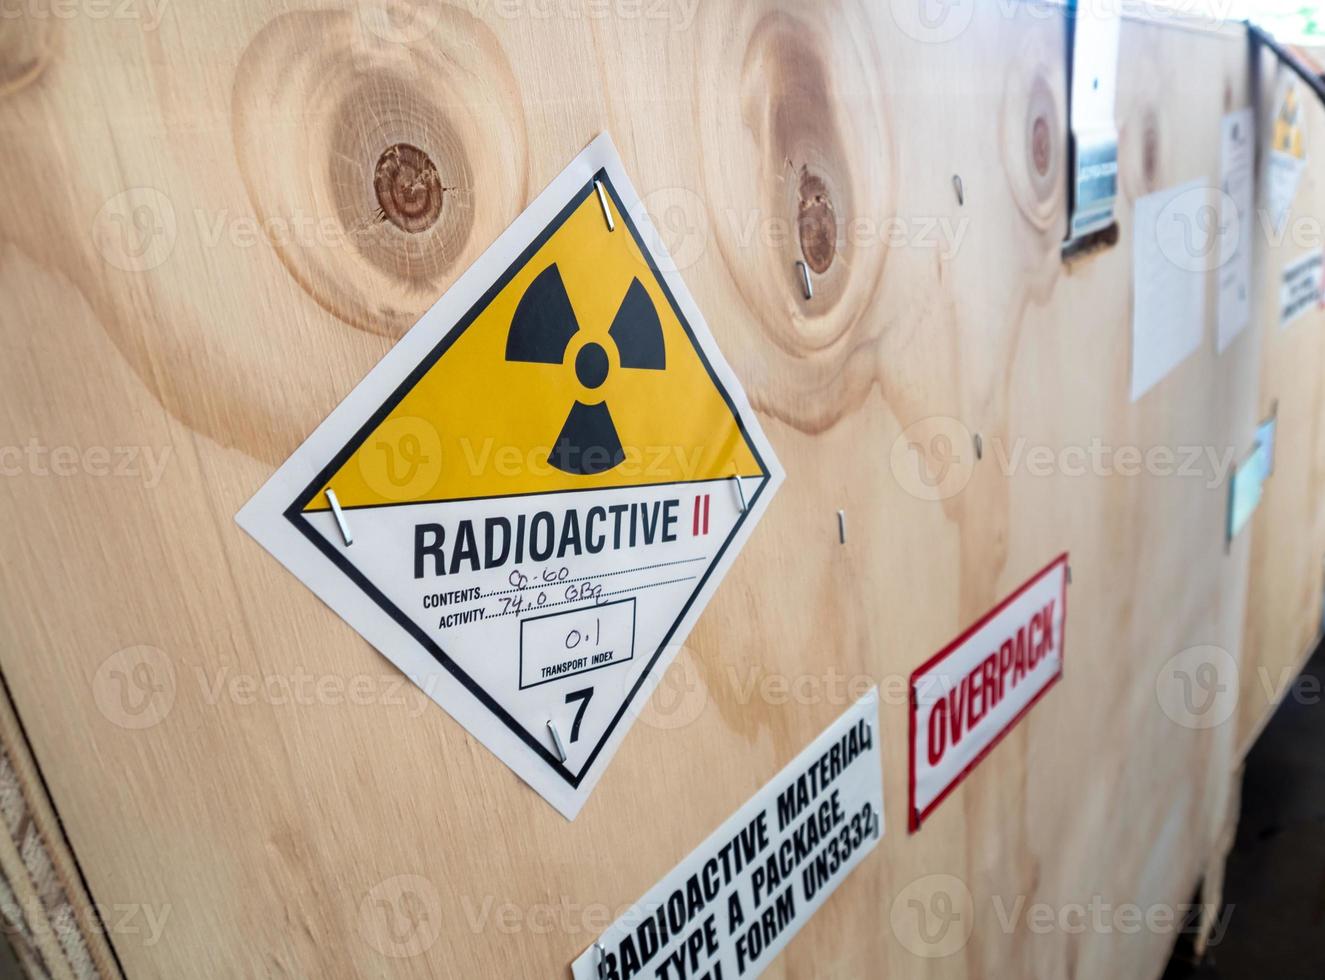 etiqueta de radiação ao lado da caixa de transporte de madeira digite um pacote foto